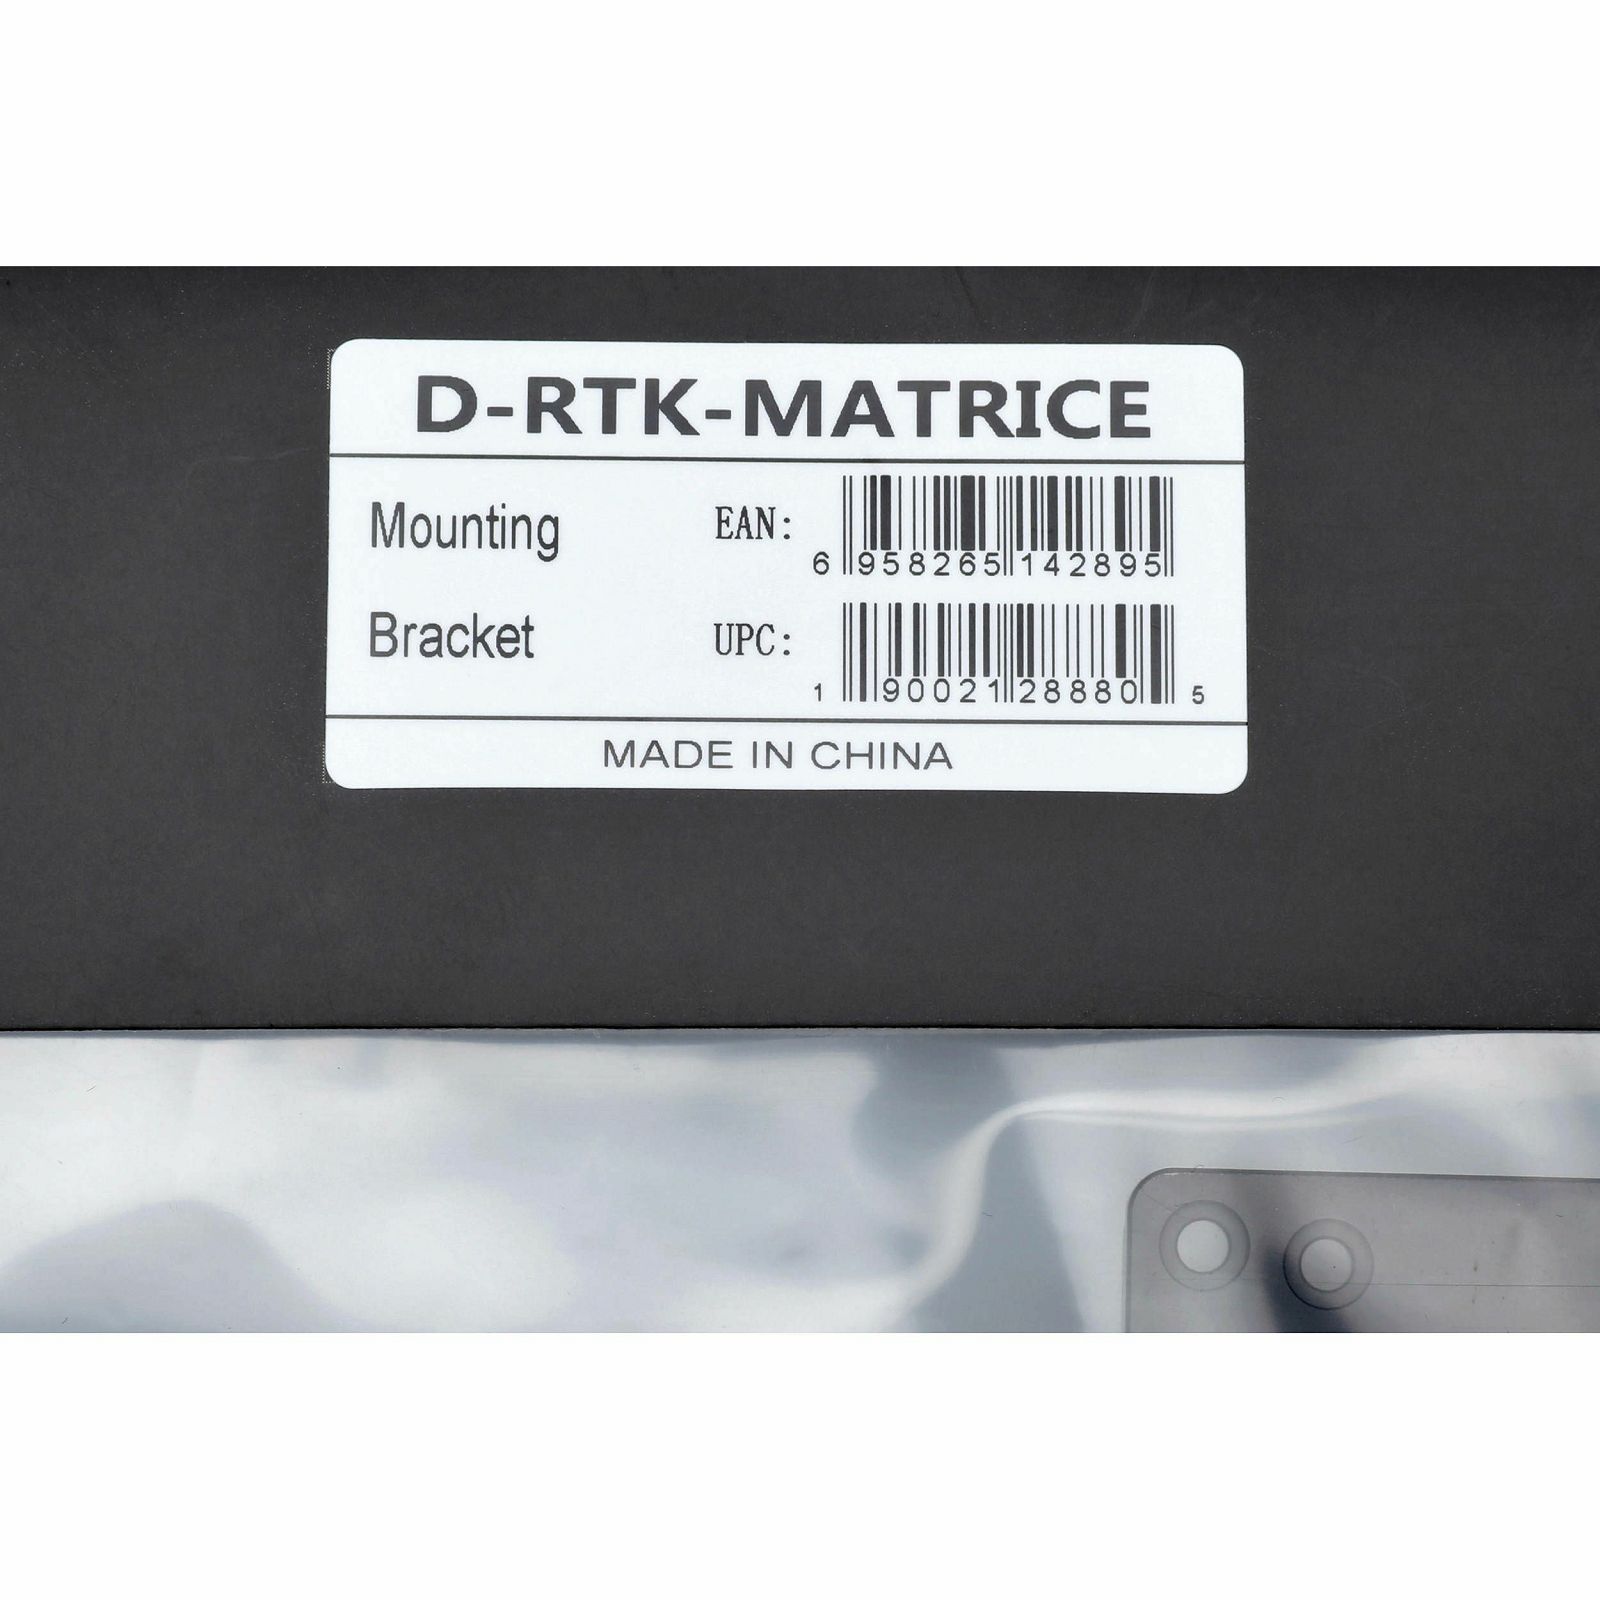 DJI Matrice 600 PRO D-RTK Mounting Bracket